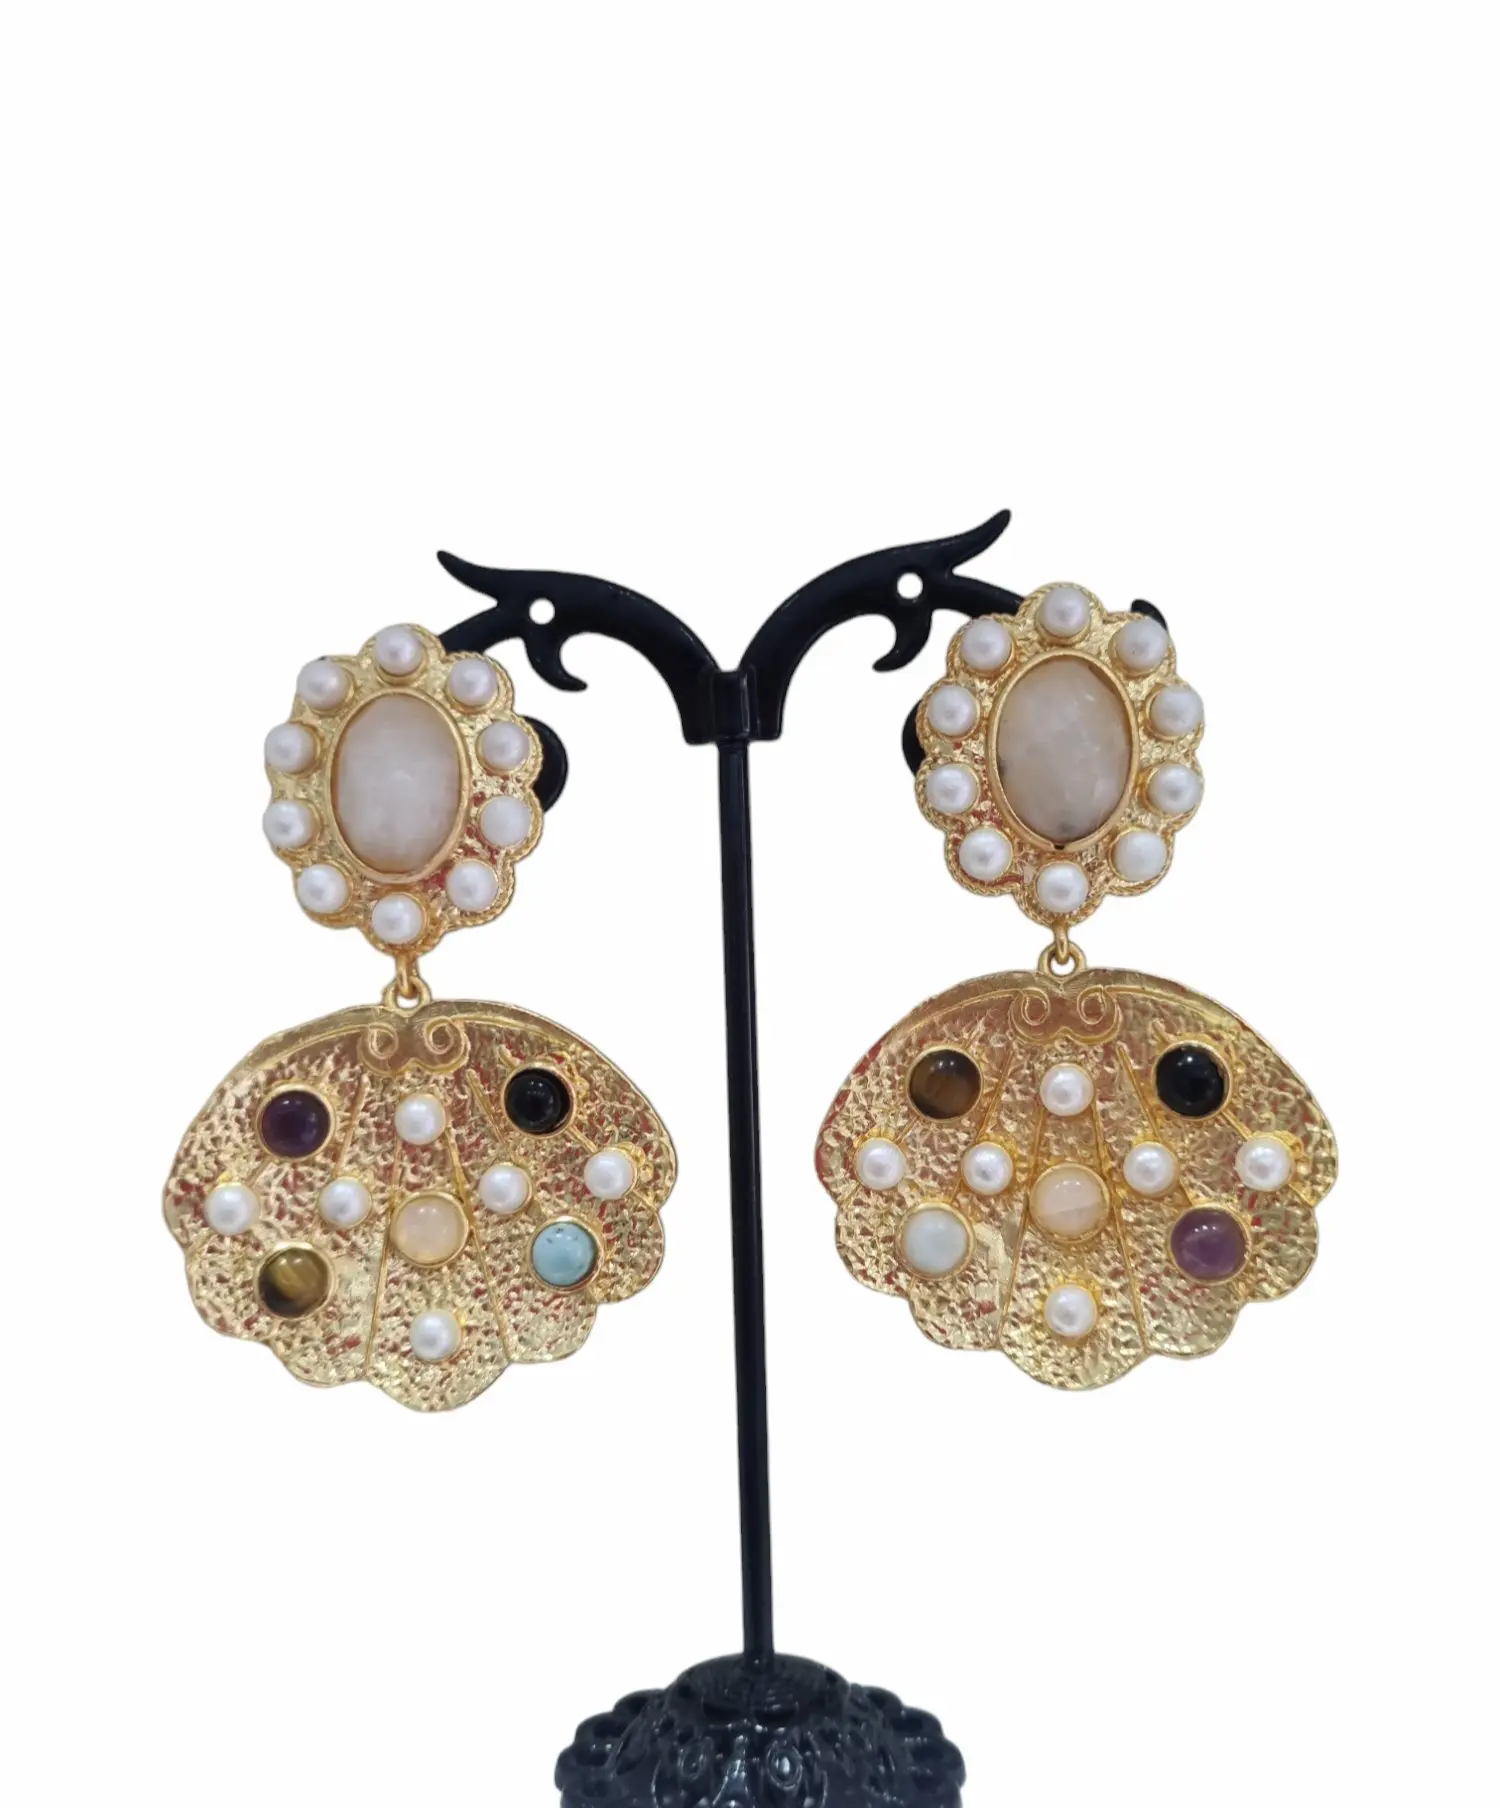 Orecchini  realizzati con pietre naturali e perle incastonate nell ottone.
Peso 13.3gr
Lunghezza 6cm